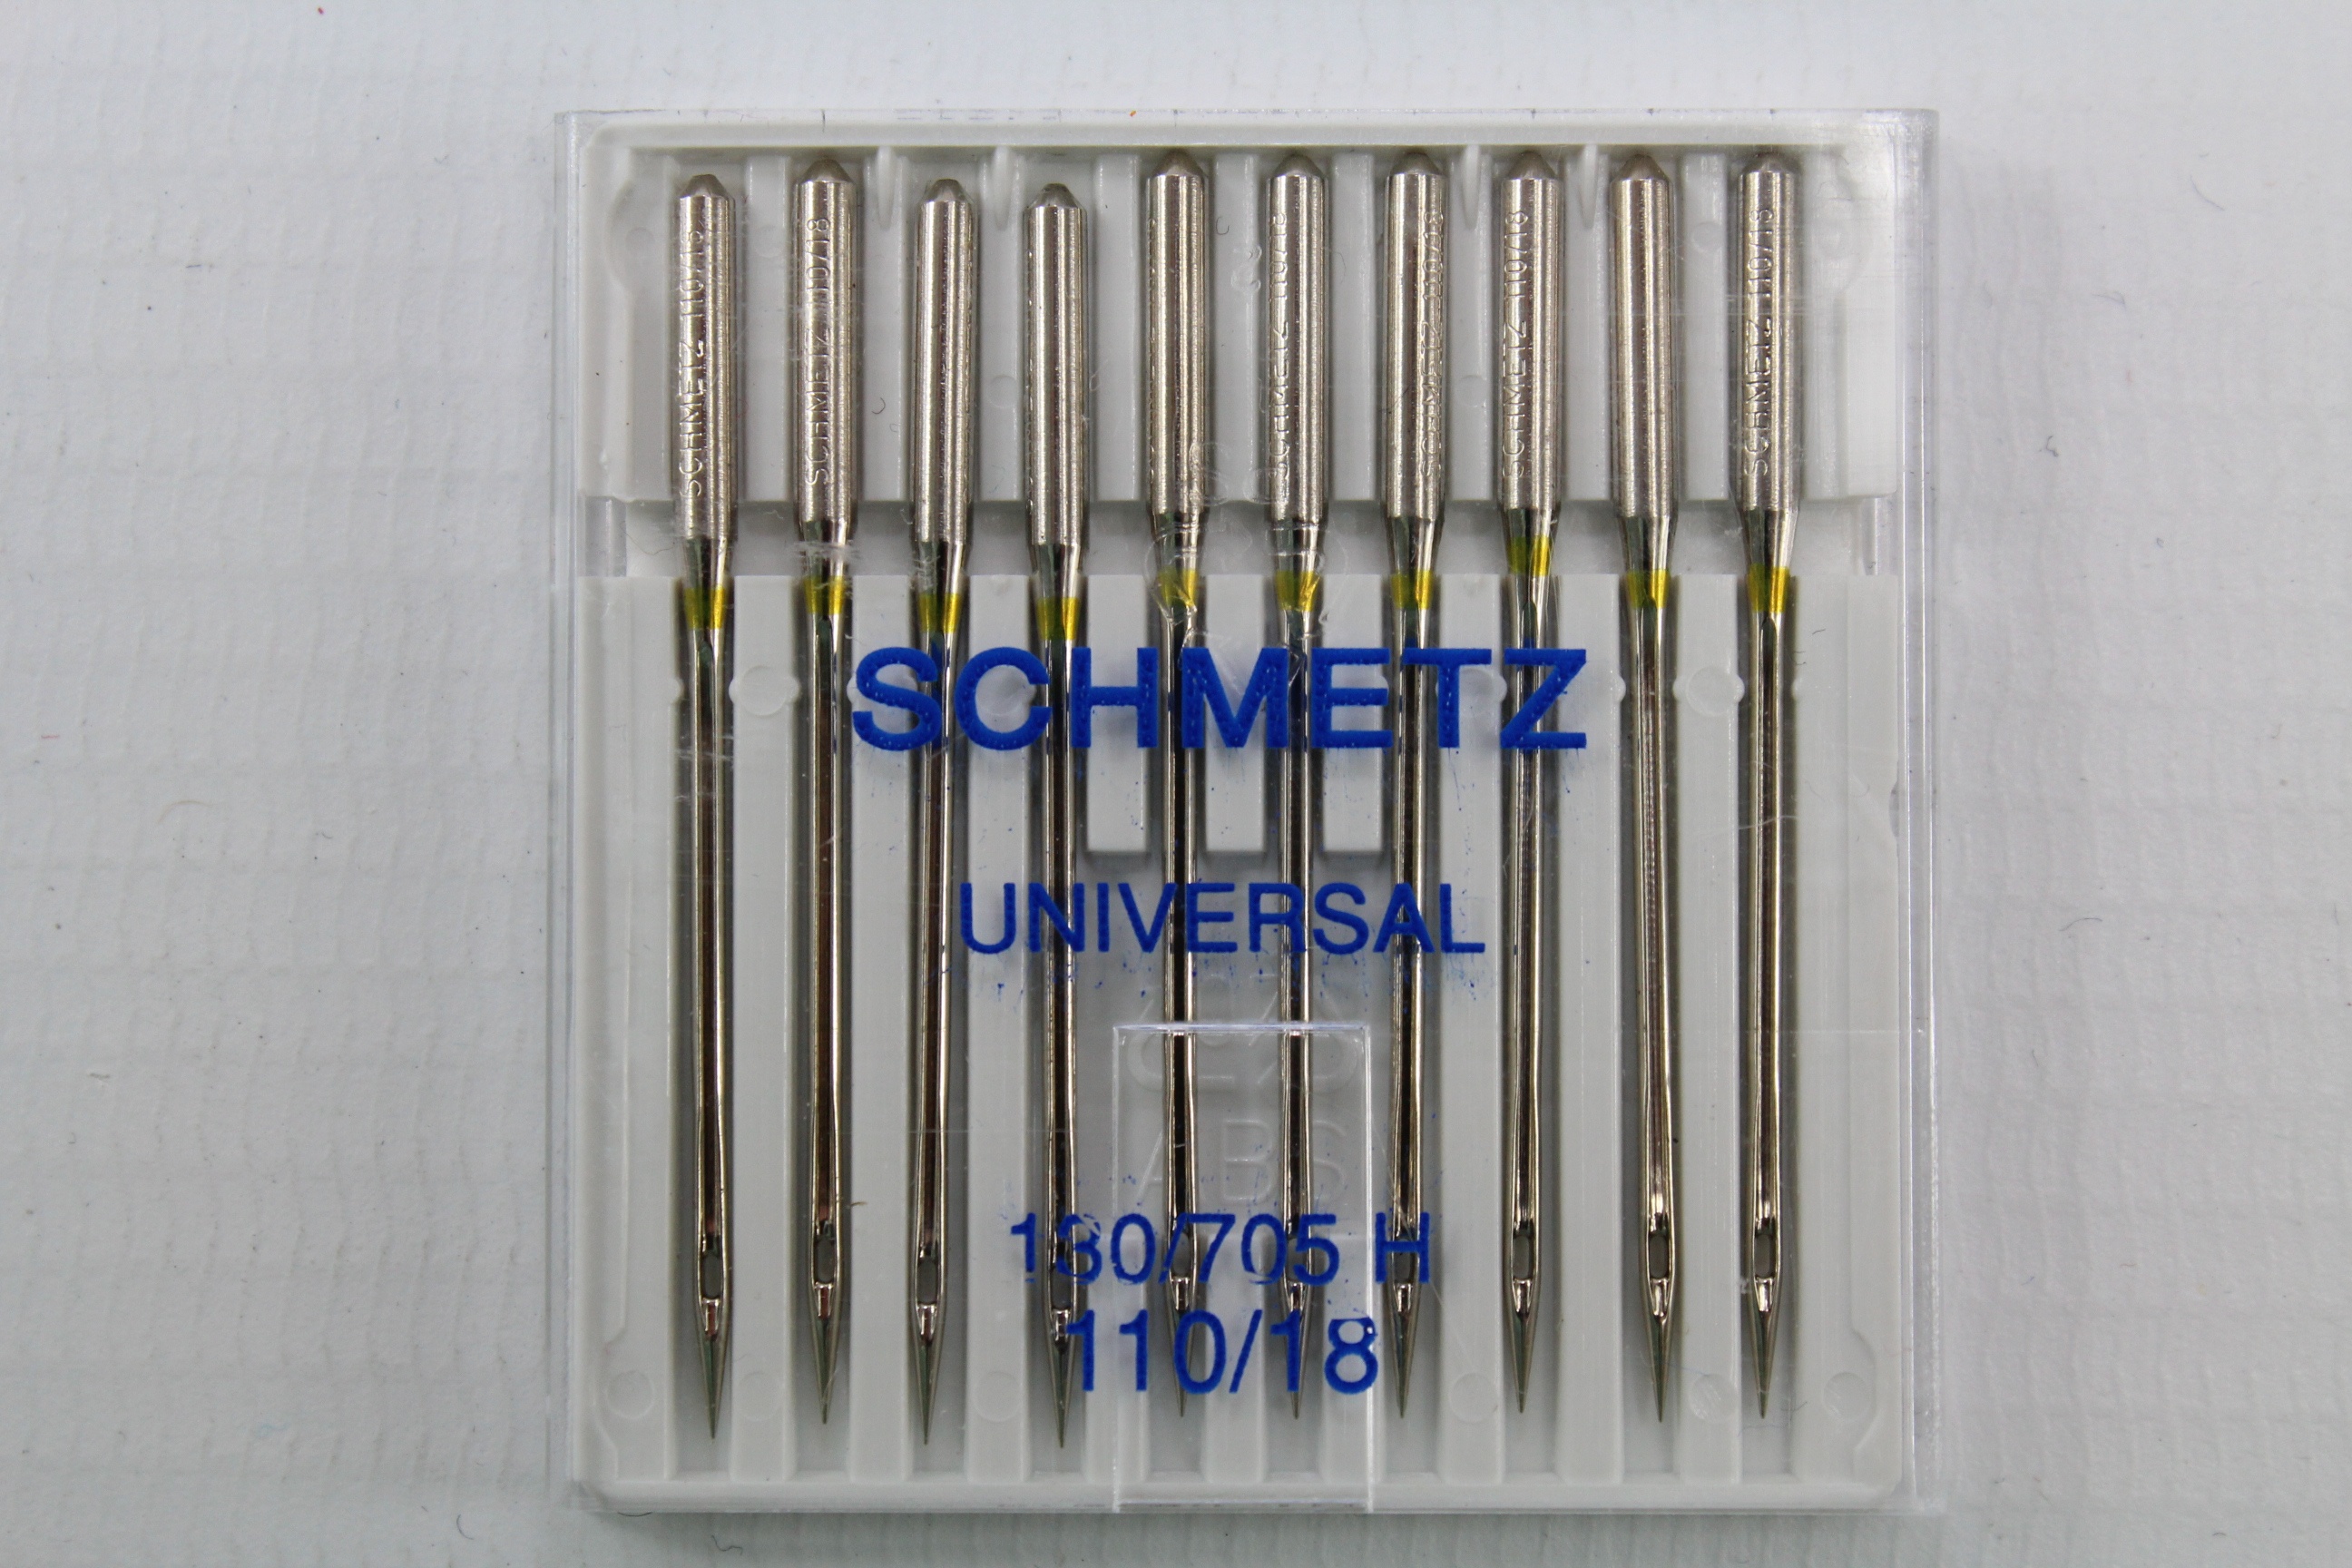 Schmetz Universal 130/705 H 110/18